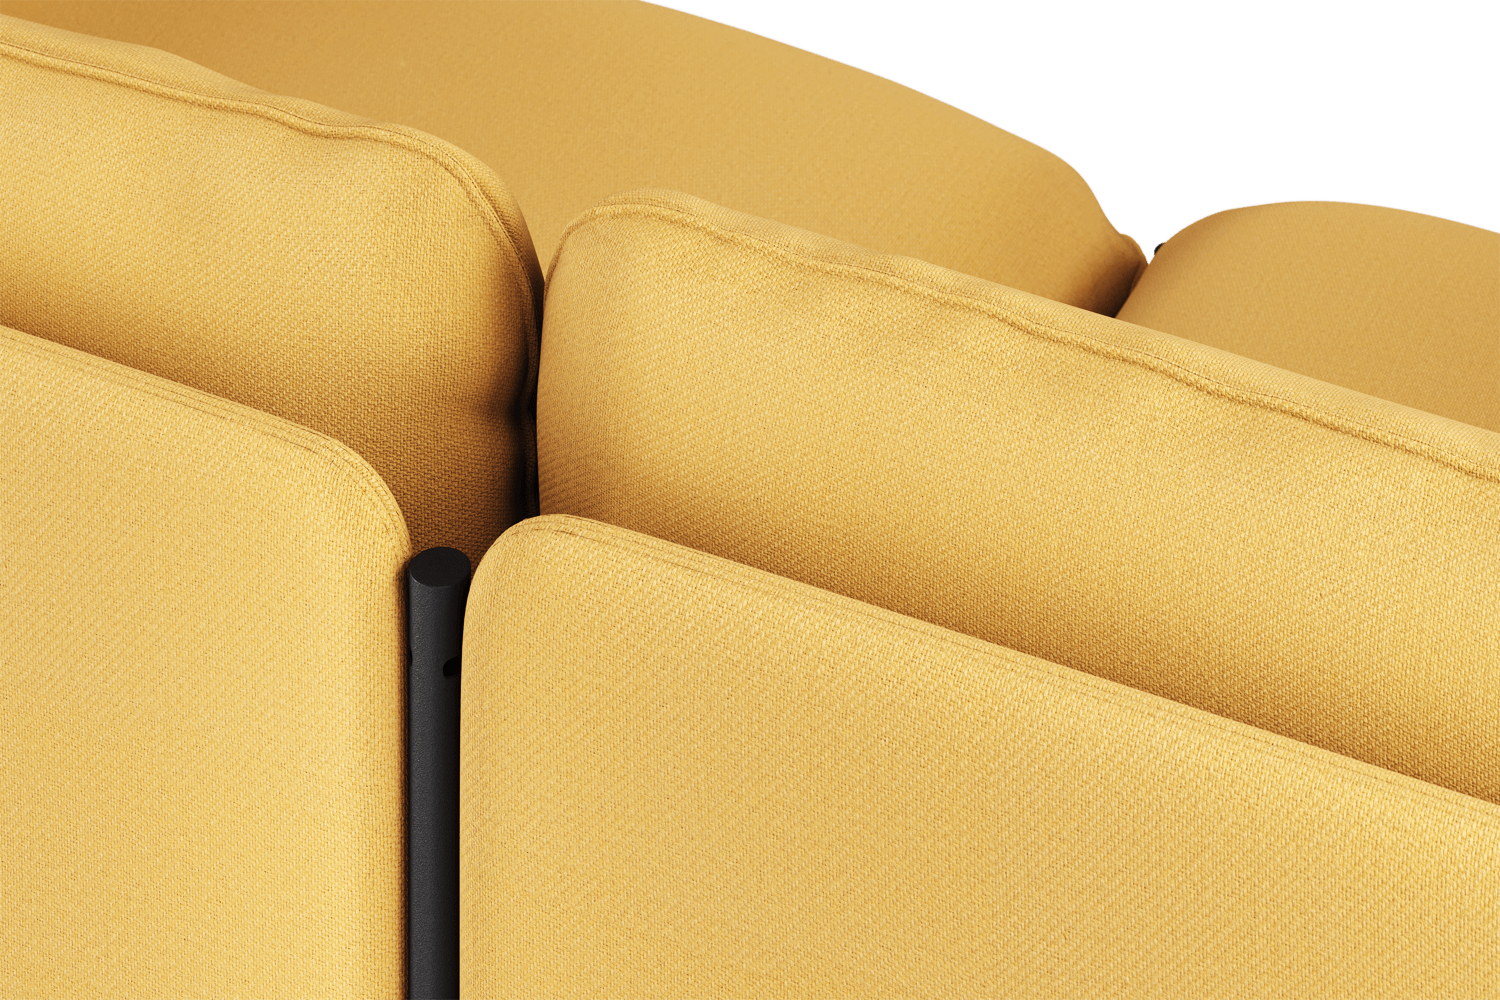 Toom Modular Sofa 4-Sitzer Konfiguration 2a in Yellow Ochre präsentiert im Onlineshop von KAQTU Design AG. 4er Sofa ist von Noo.ma